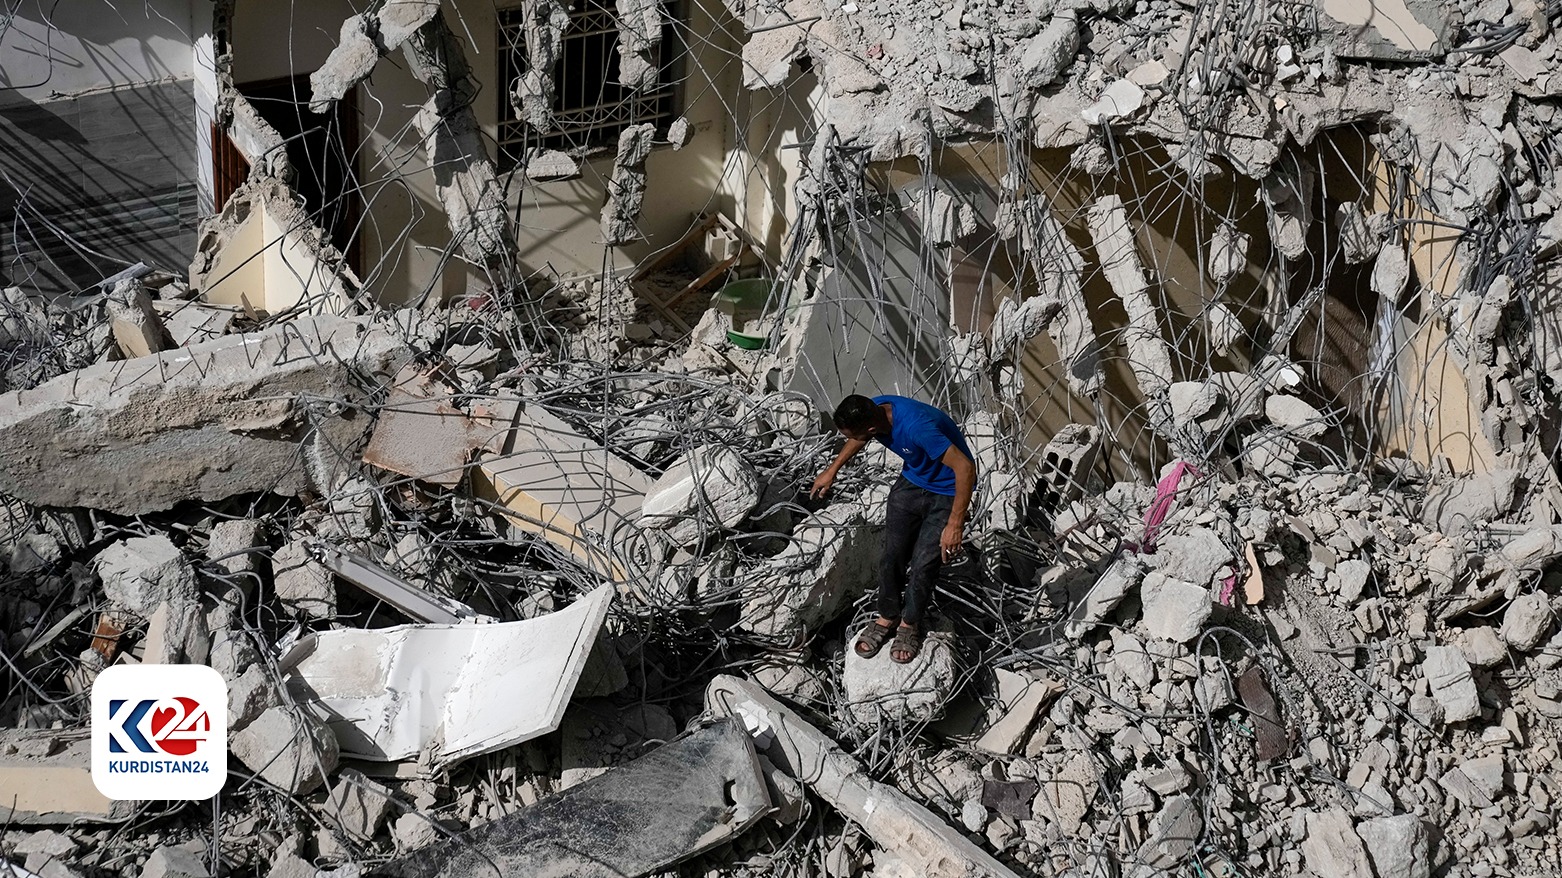 یک مرد فلسطینی پس از حمله نیروهای اسرائیلی به شهر جنین در کرانه باختری، آسیب وارد شده به یک ساختمان را بررسی می کند.پنجشنبه ٢٣ مه ٢٠٢٤.